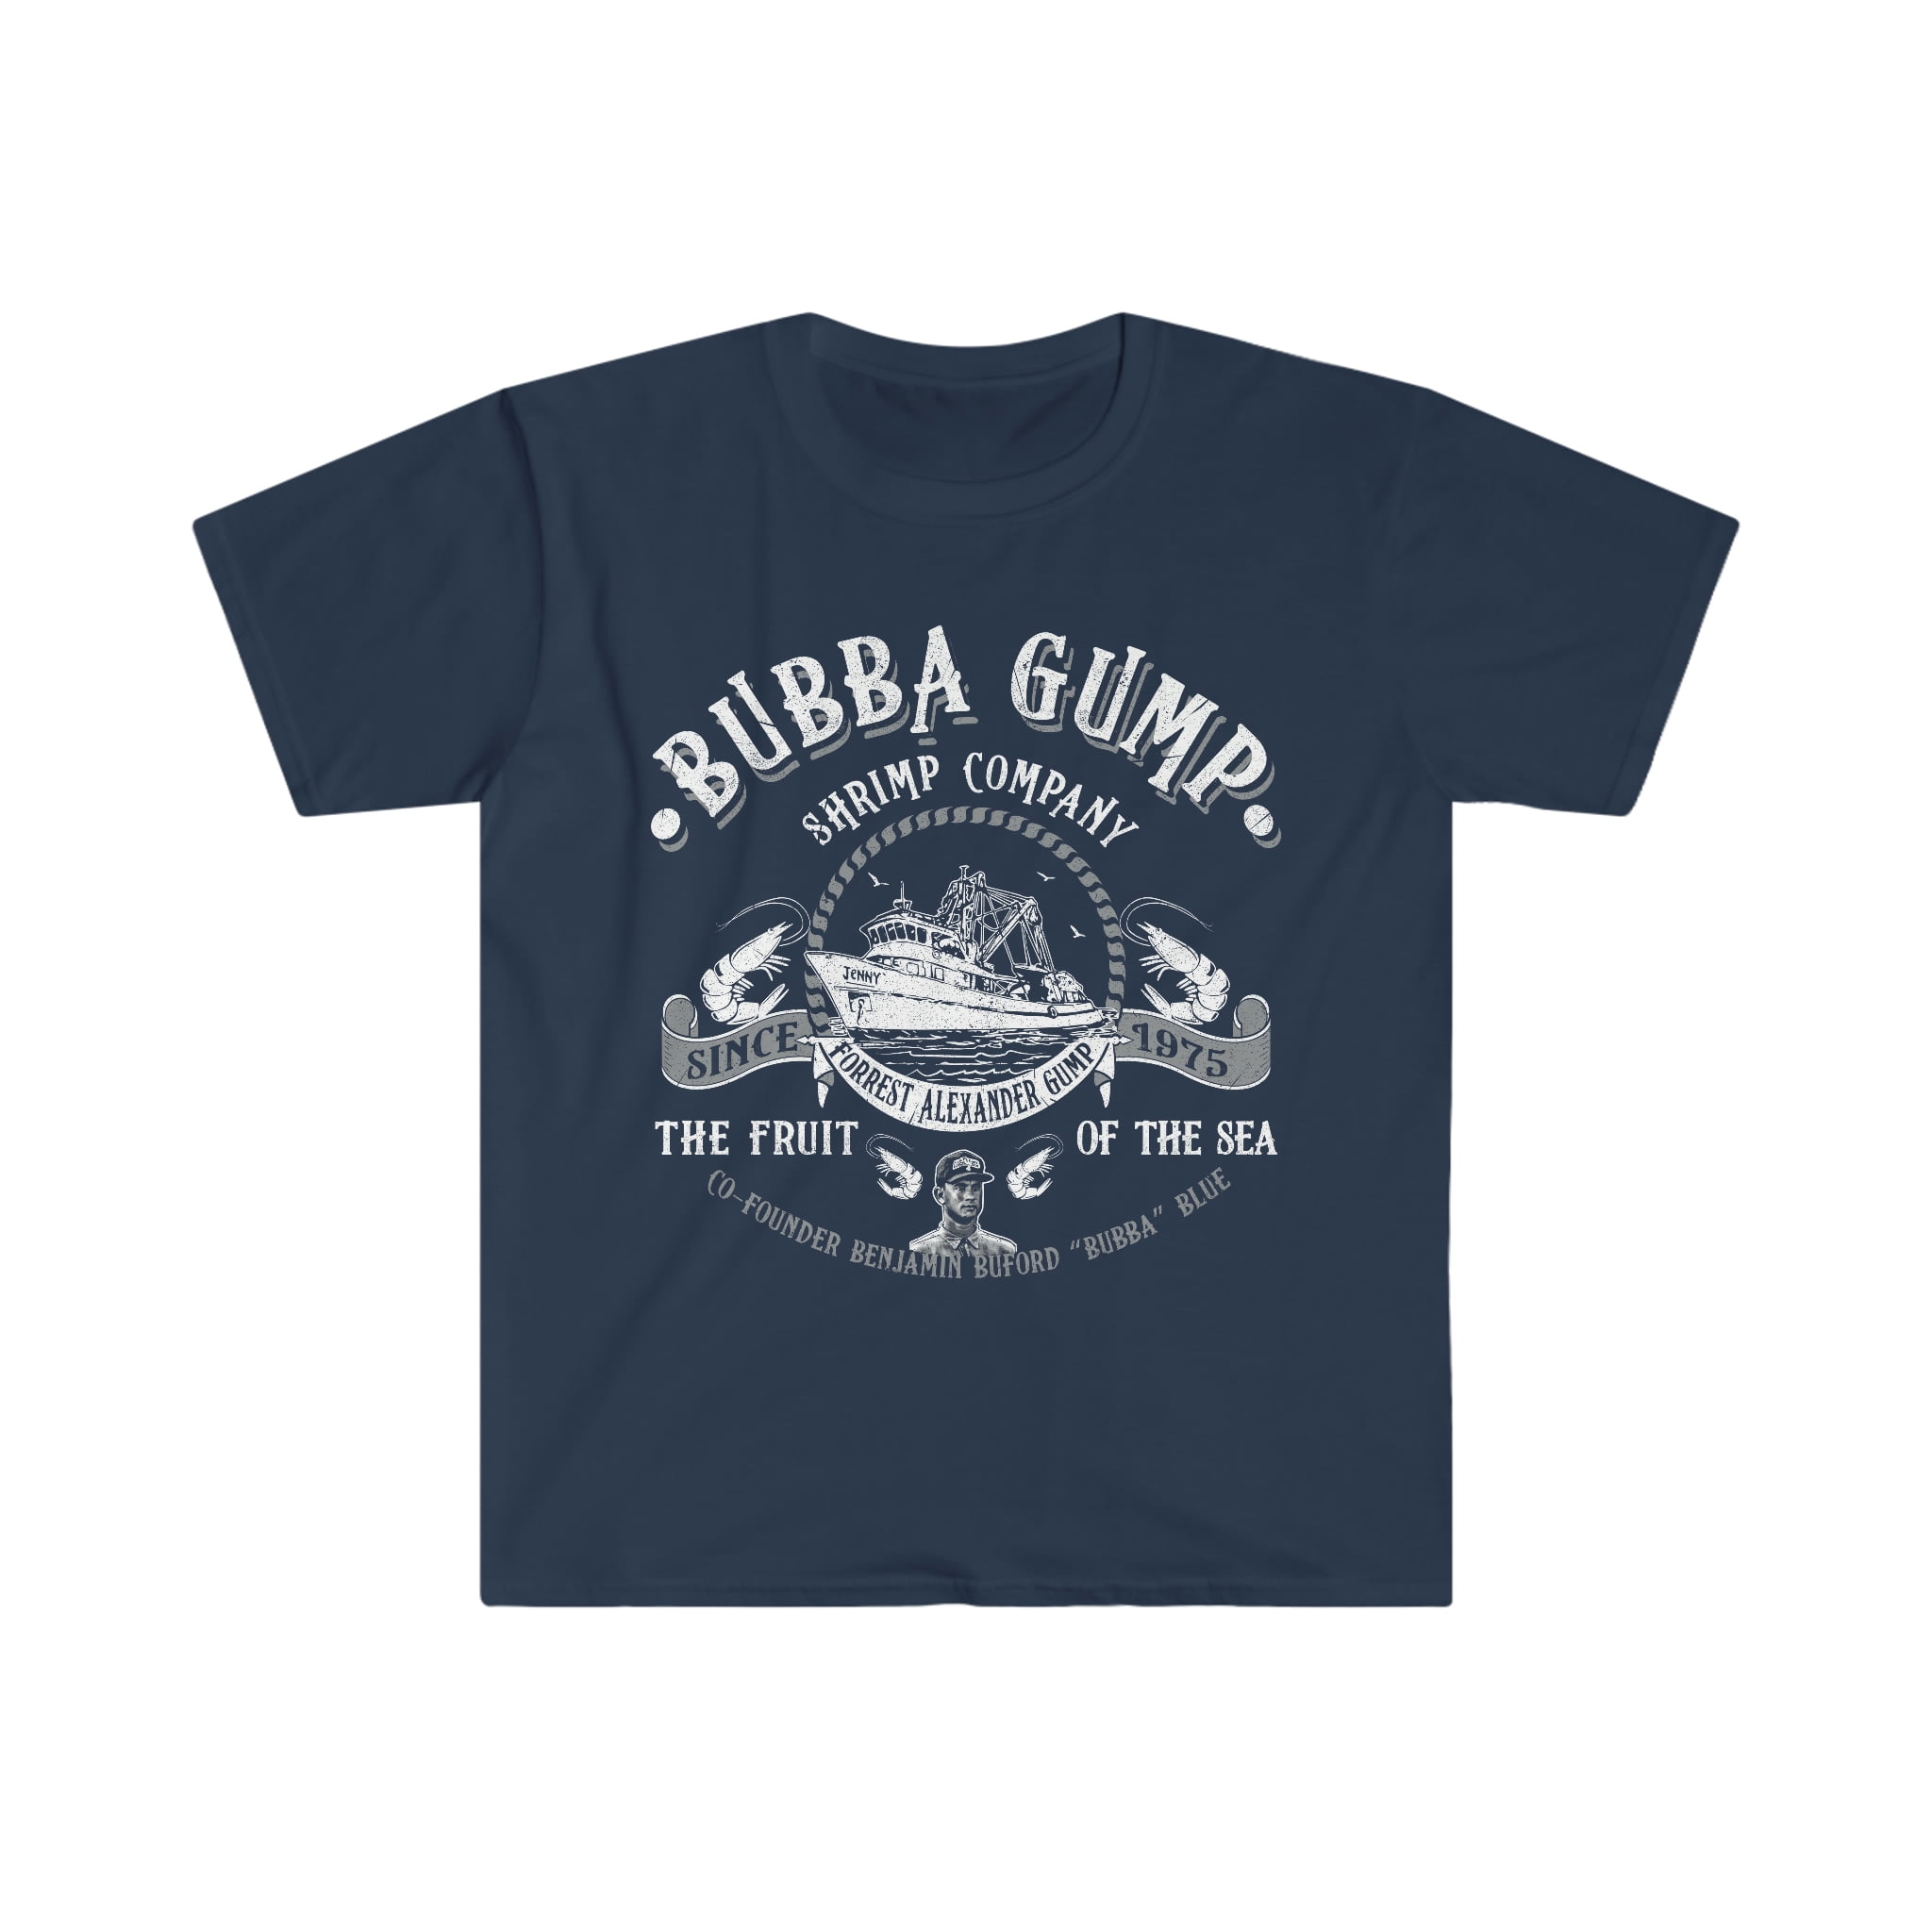 Bubba Gump Shrimp Company T-Shirt - Walmart.com